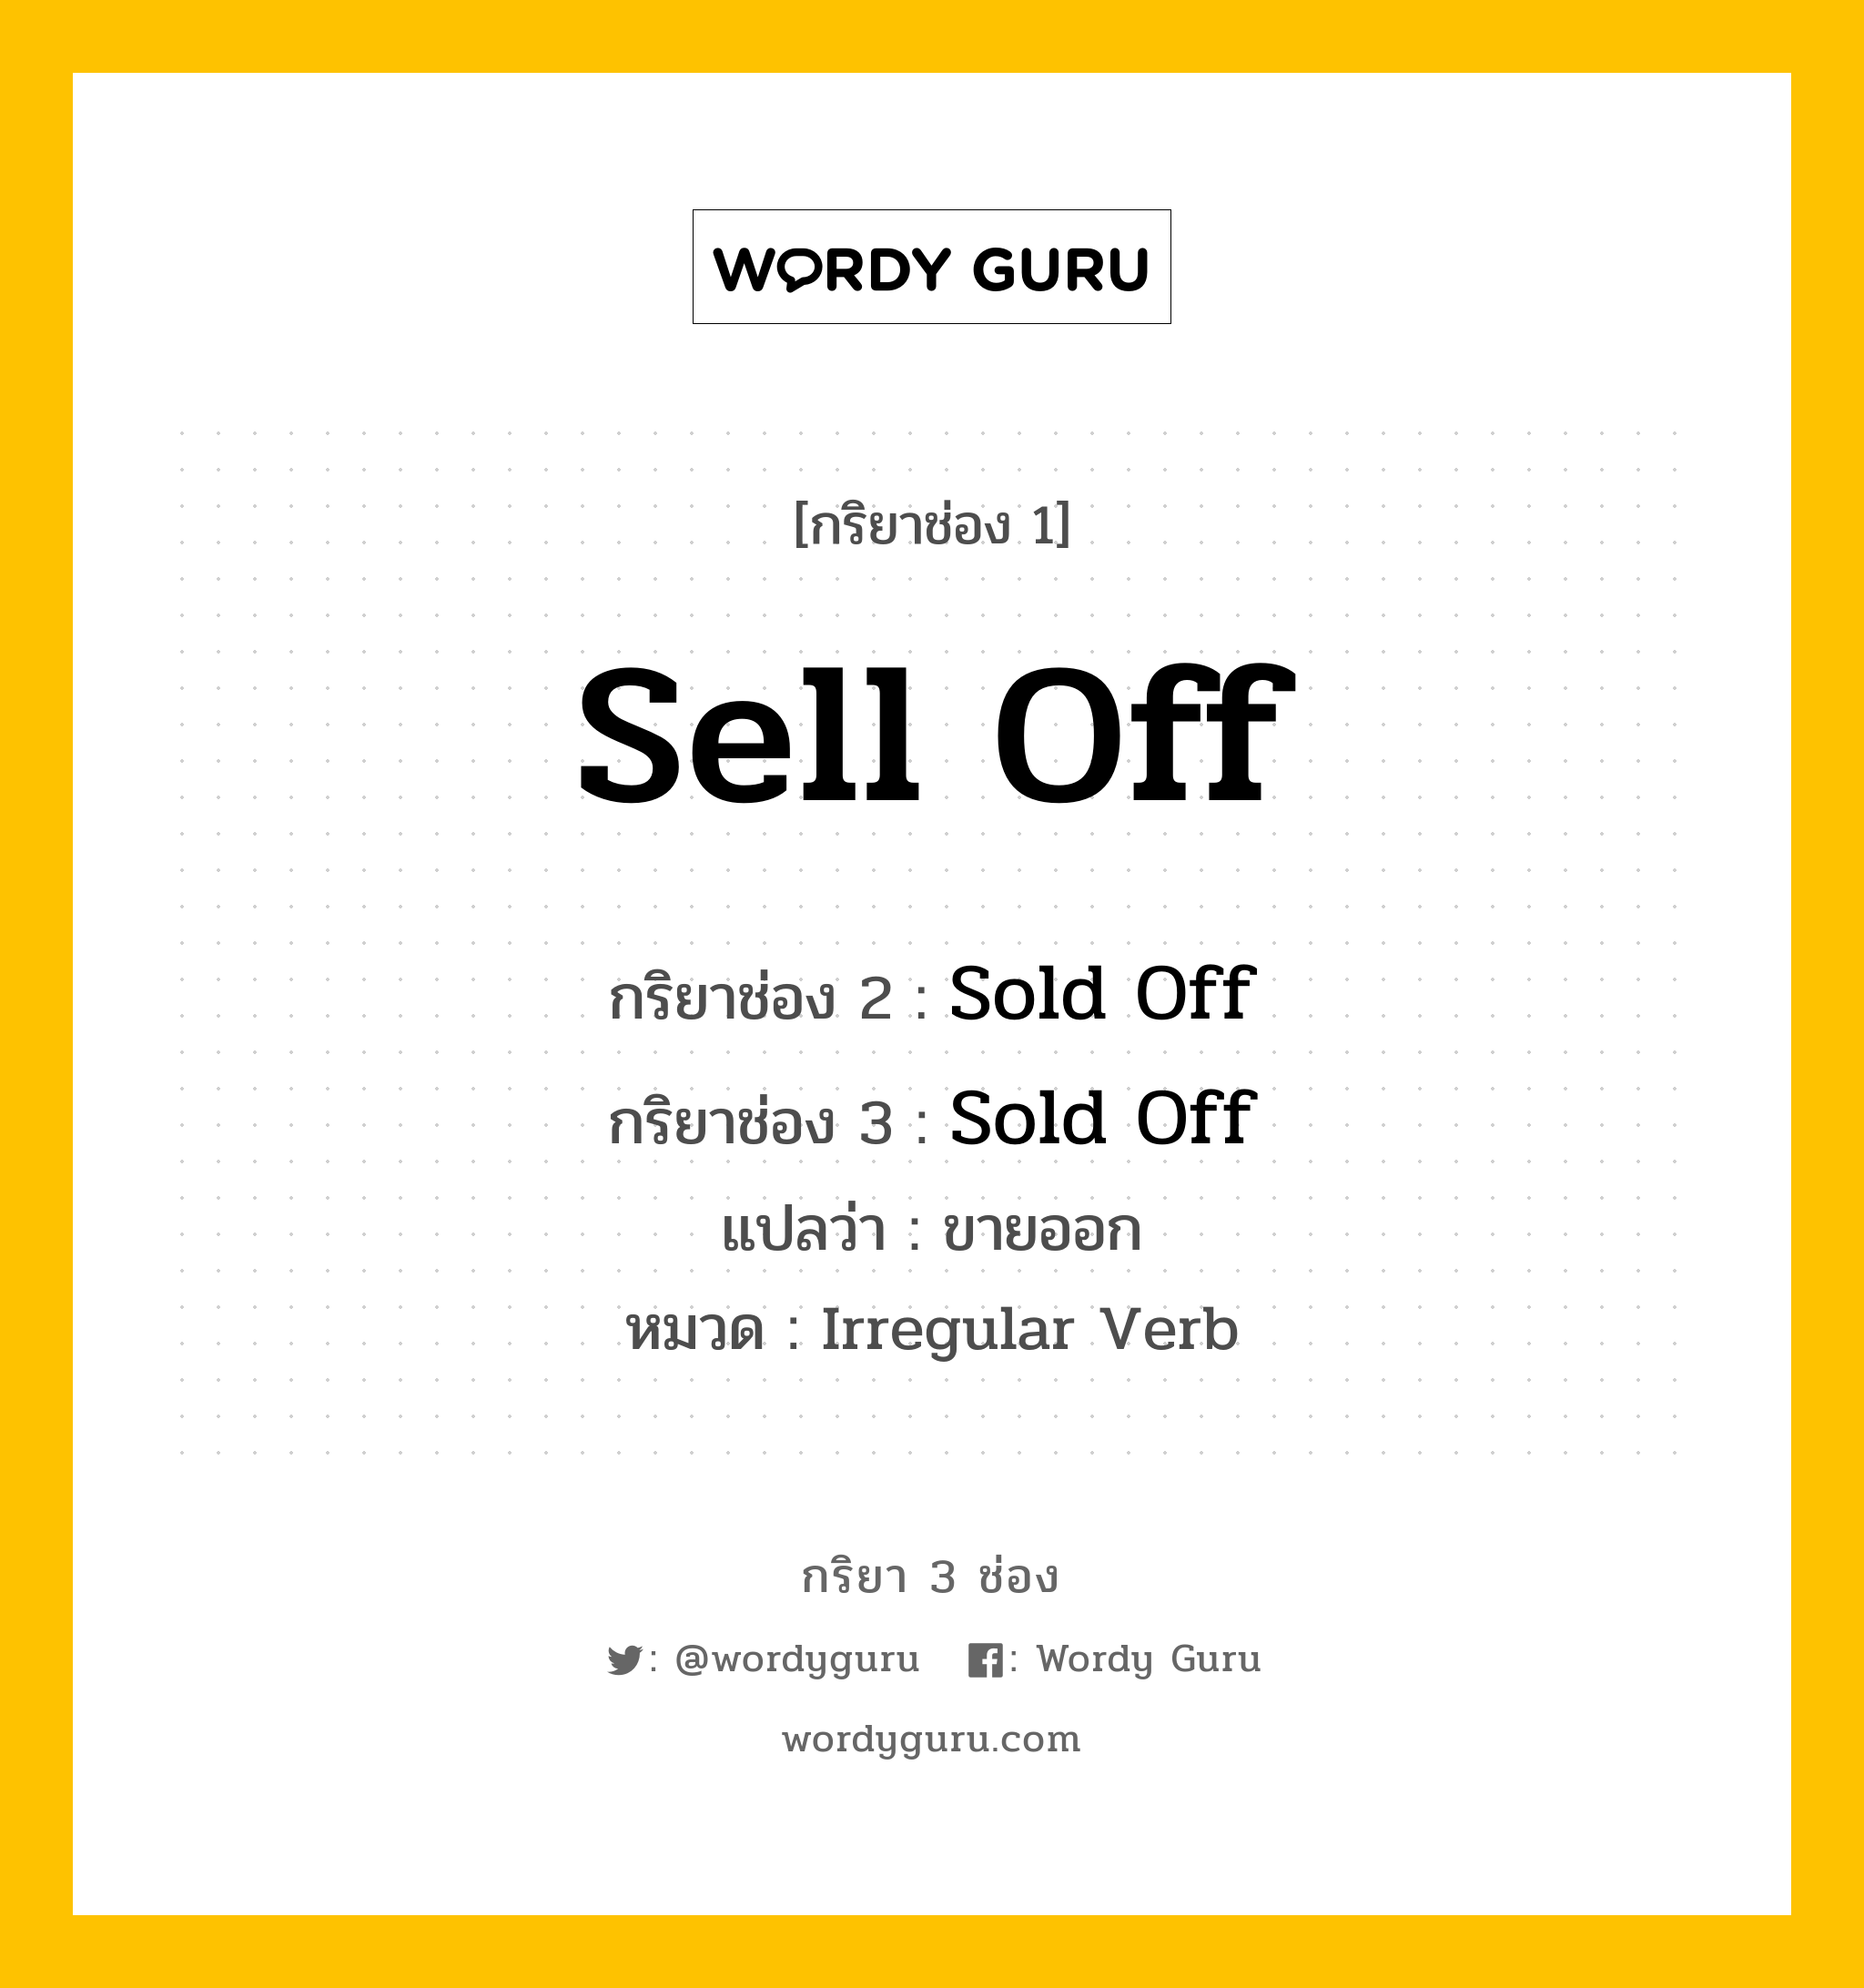 กริยา 3 ช่อง: Sell Off ช่อง 2 Sell Off ช่อง 3 คืออะไร, กริยาช่อง 1 Sell Off กริยาช่อง 2 Sold Off กริยาช่อง 3 Sold Off แปลว่า ขายออก หมวด Irregular Verb หมวด Irregular Verb